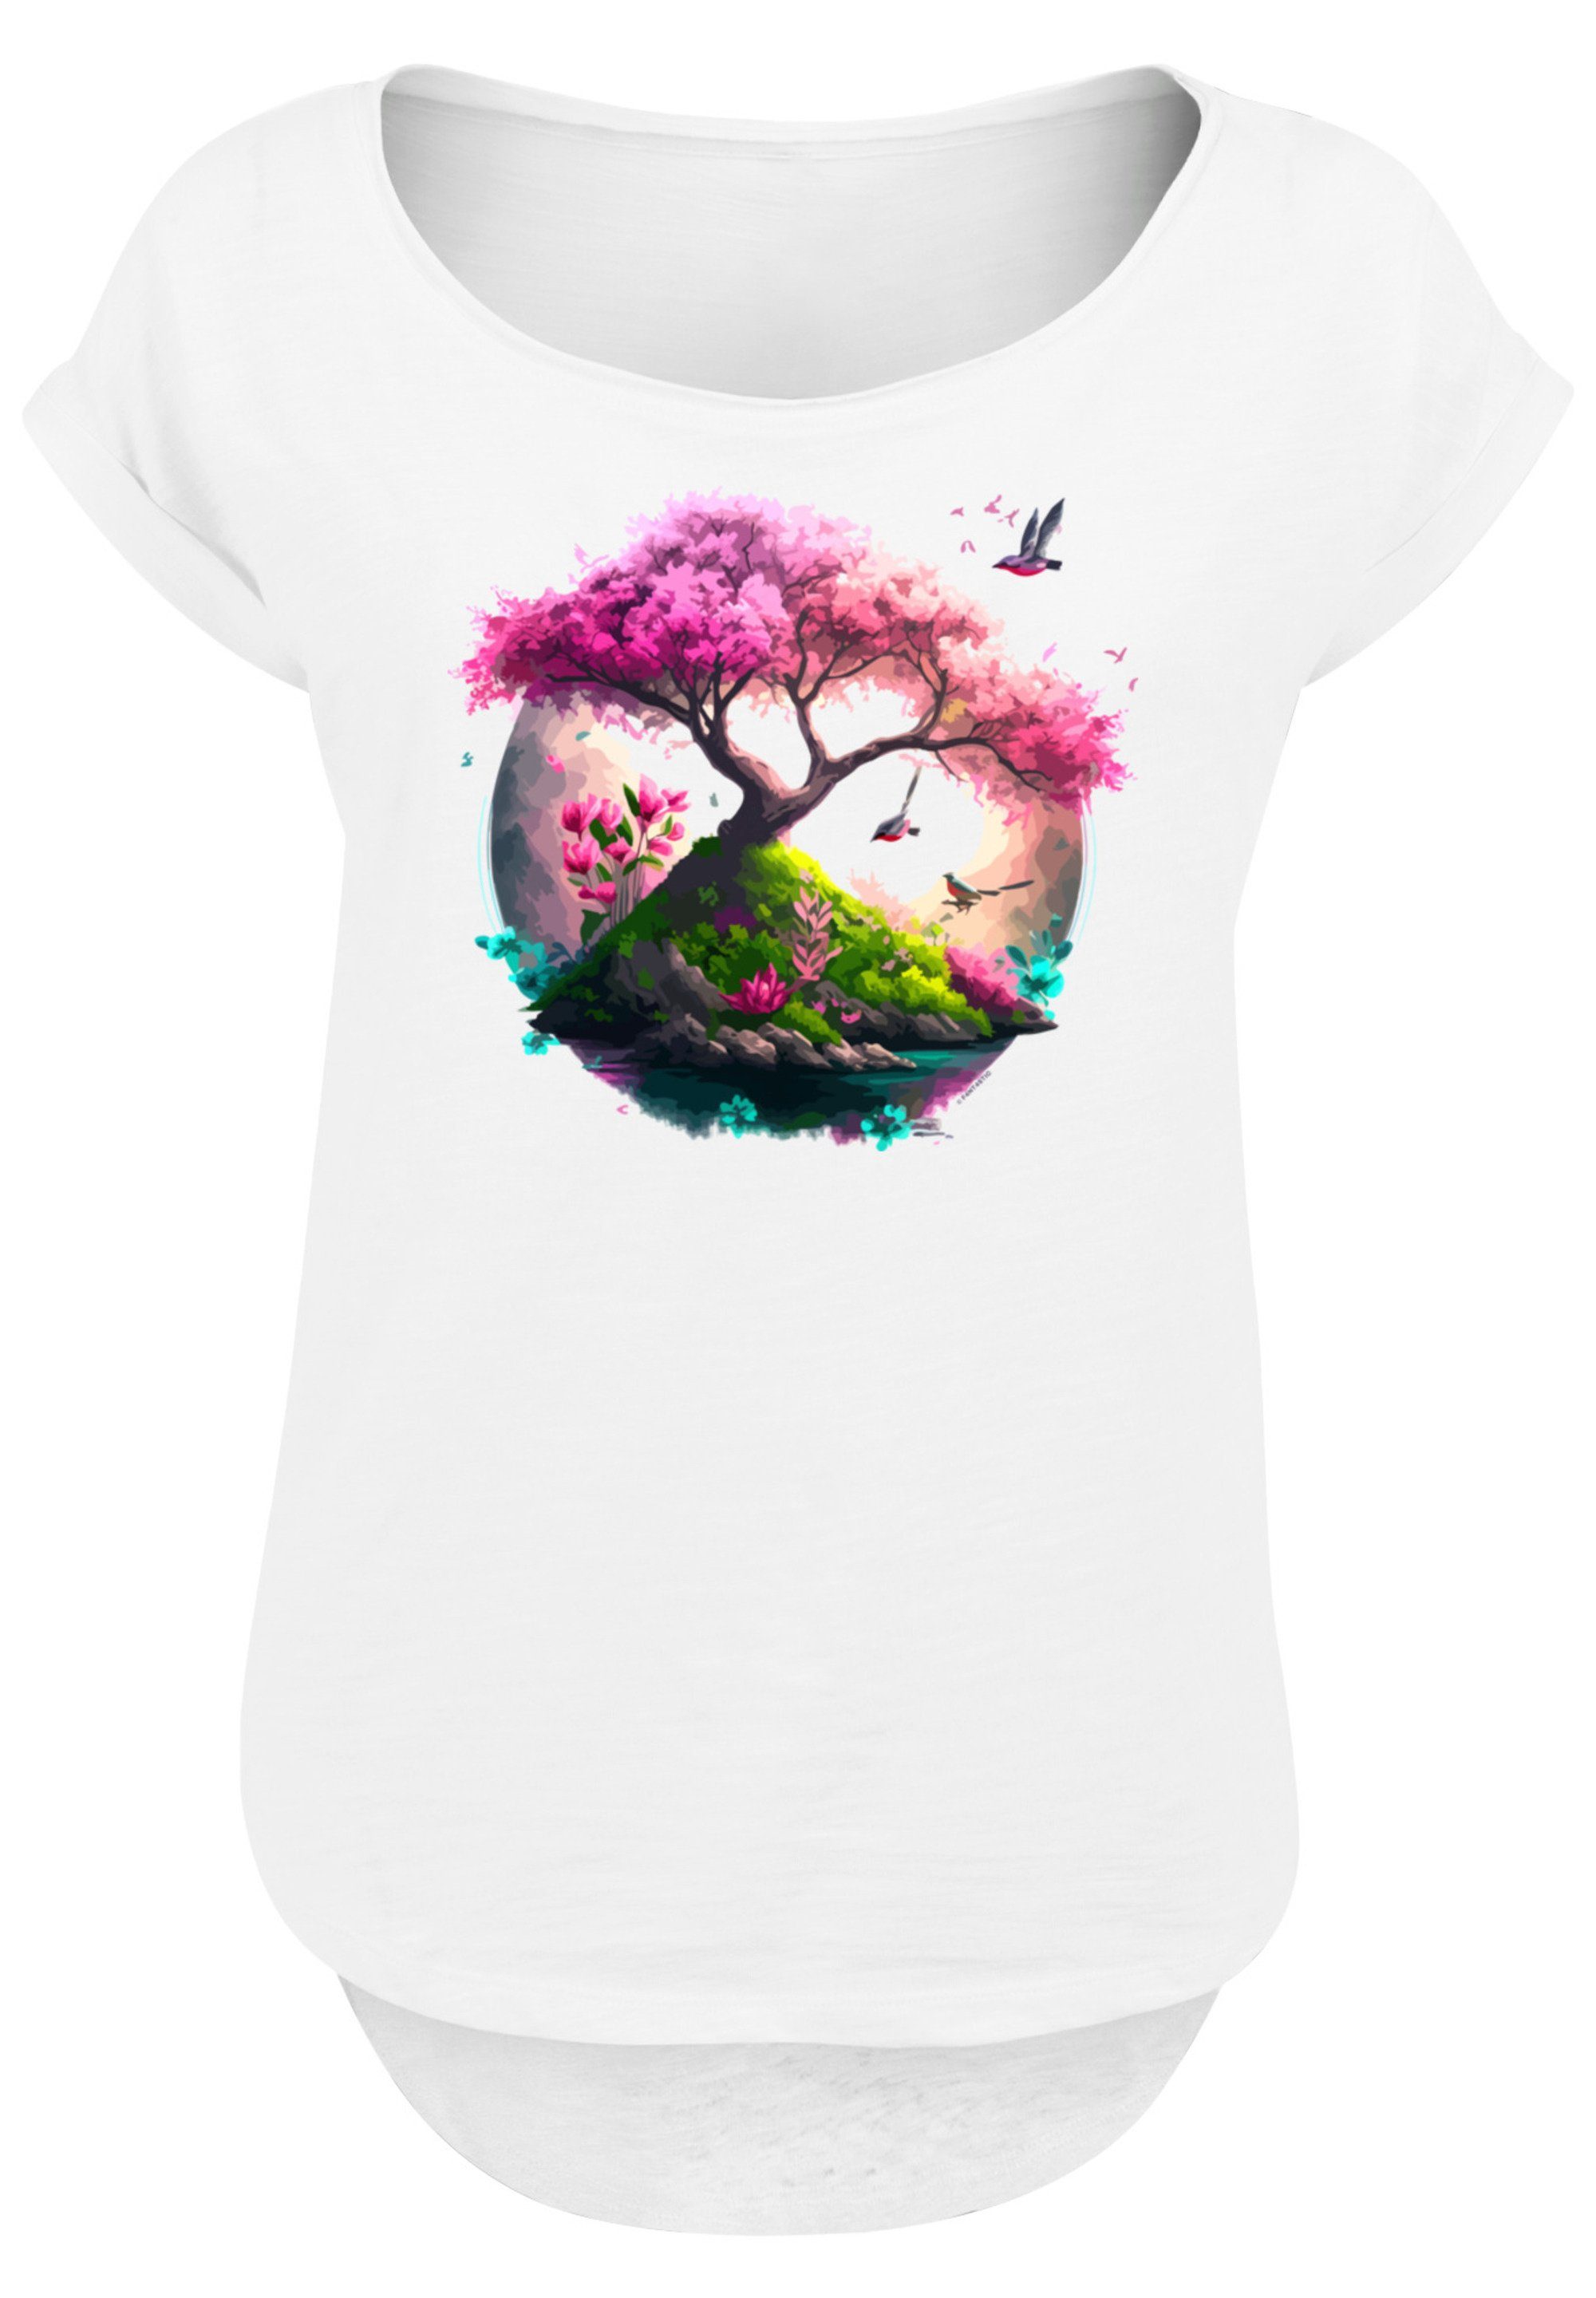 hohem Sehr weicher Kirschblüten Baumwollstoff T-Shirt Tragekomfort F4NT4STIC mit Baum Print,